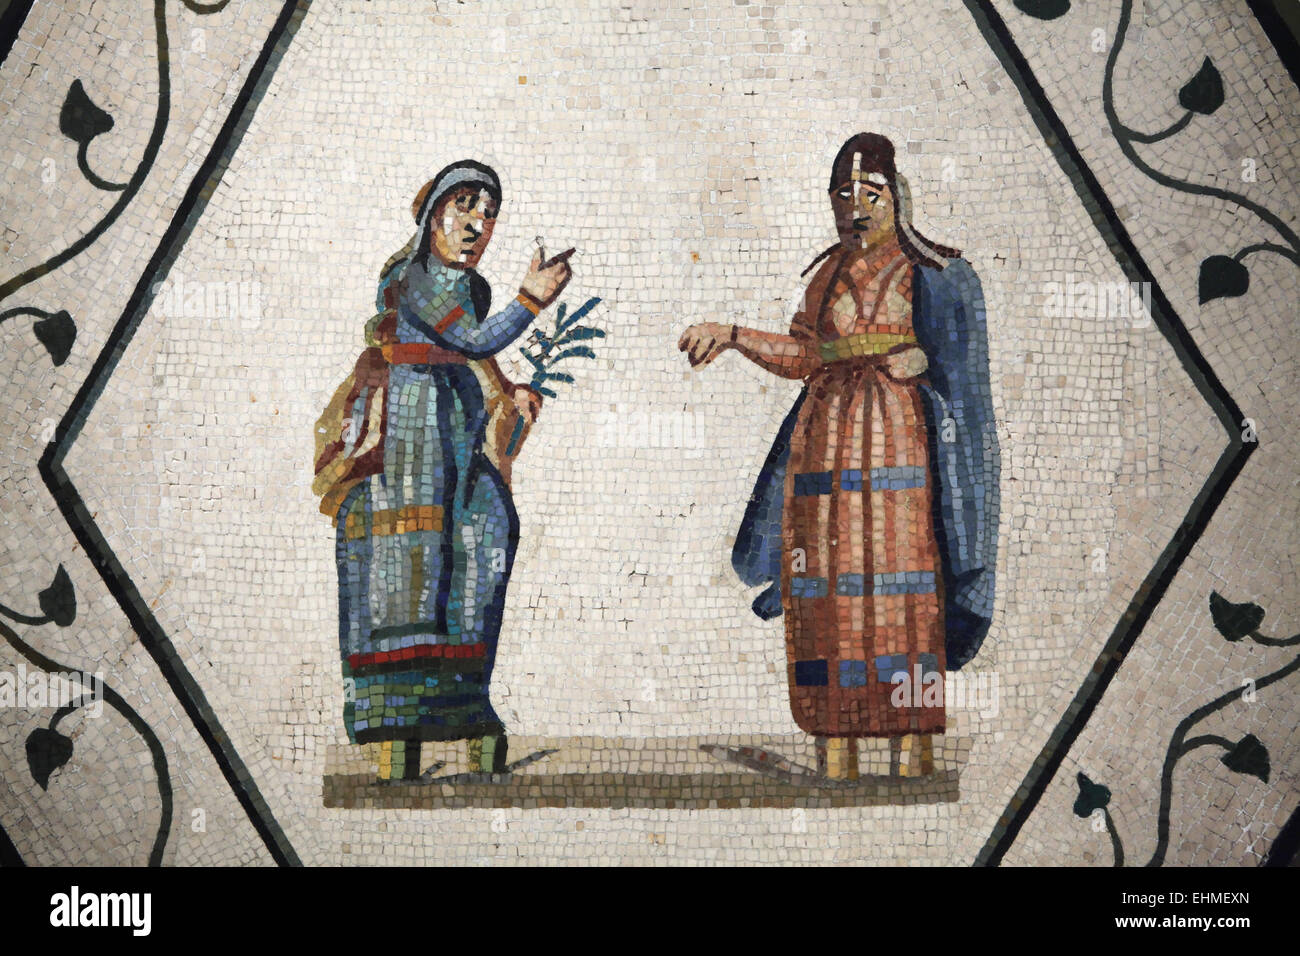 Due attori in una scena drammatica. Mosaico romano del III secolo D.C., Lorium vicino a Roma, Italia. Altes Museum di Berlino, Germania. Foto Stock